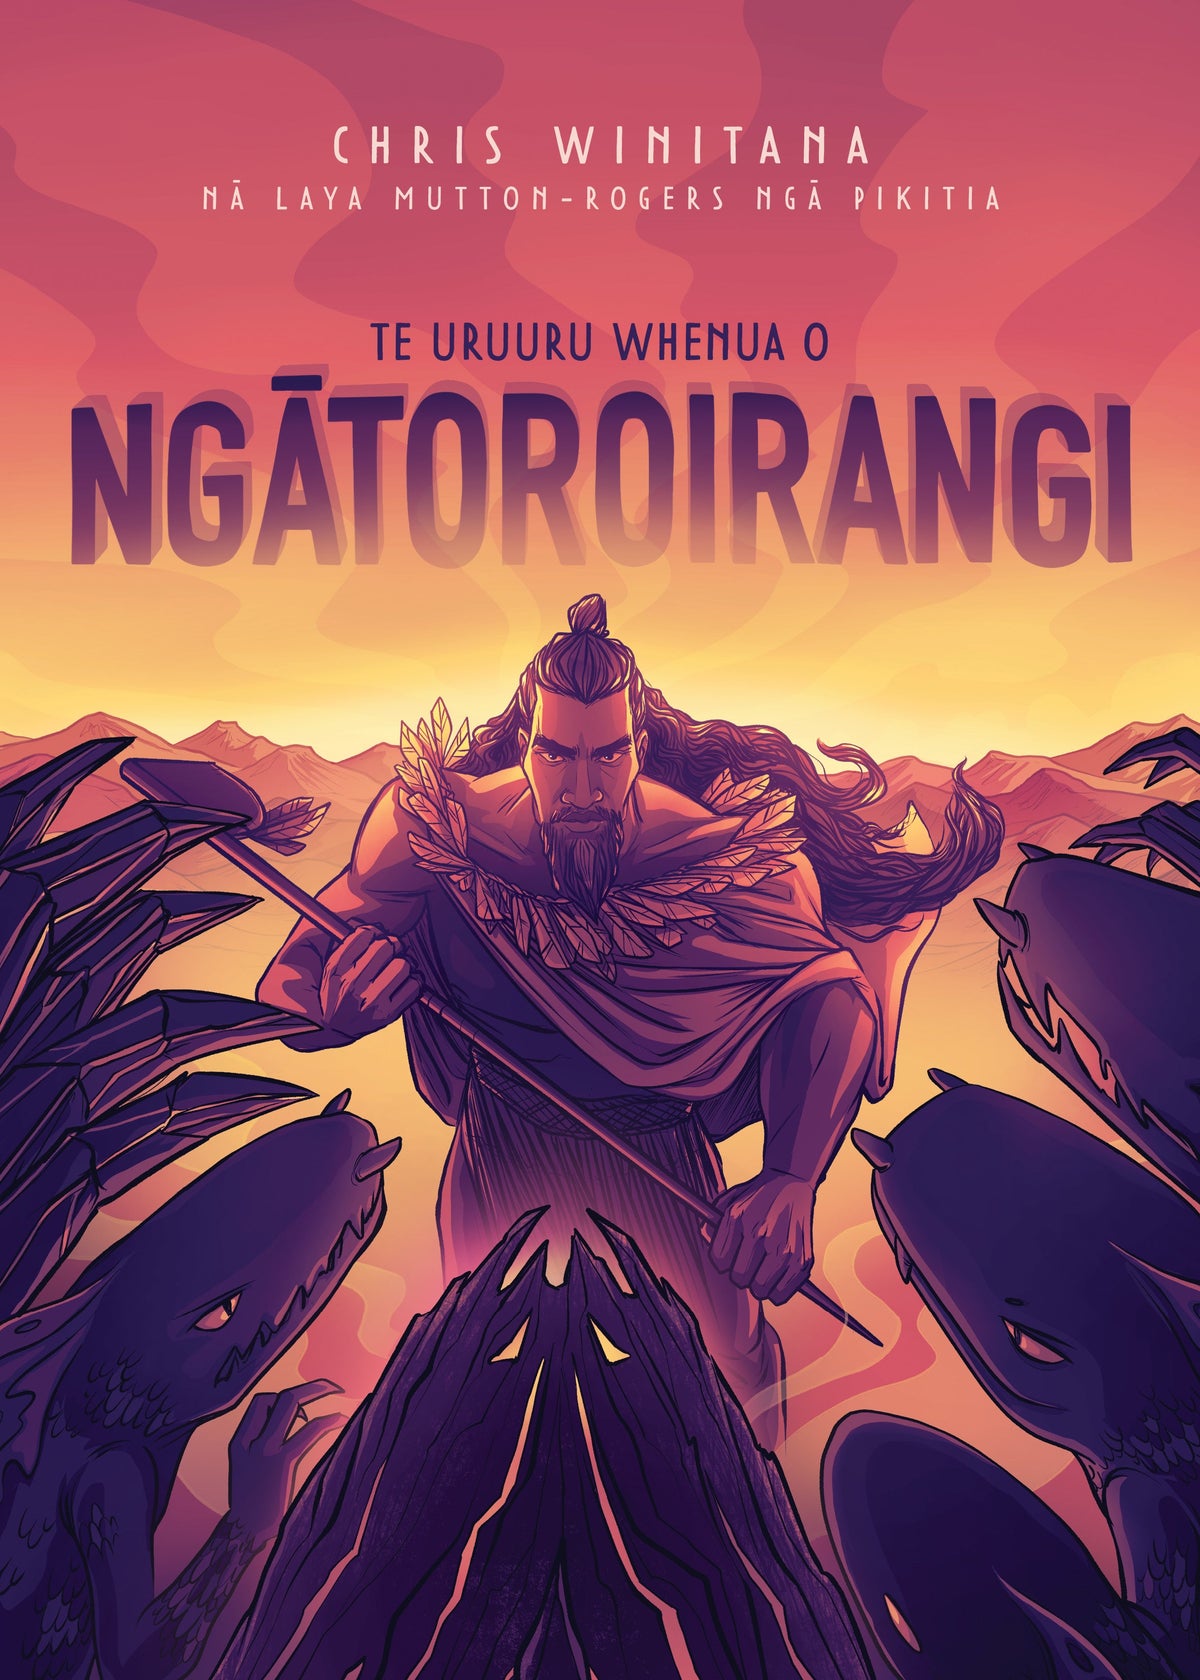 Te Uruuru Whenua o Ngātoroirangi by Chris Winitana